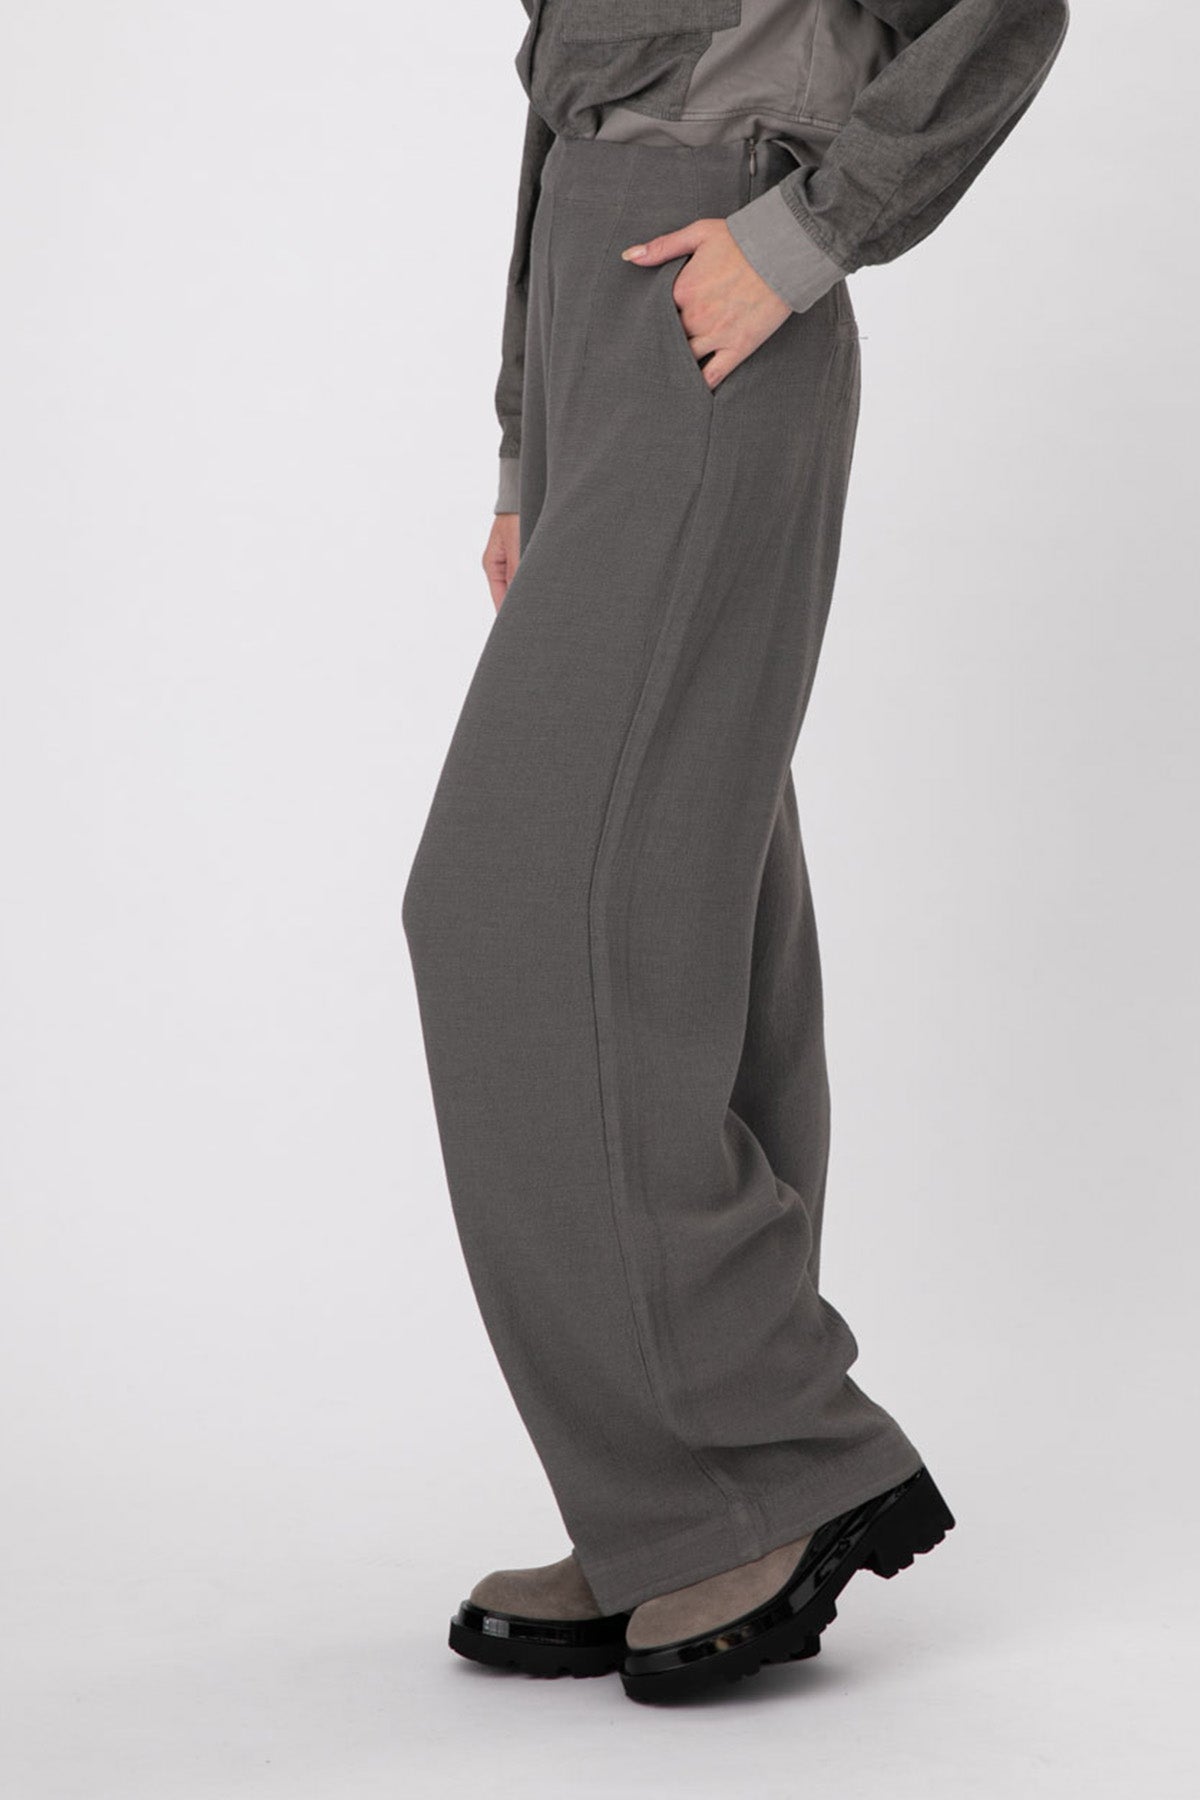 Transit Geniş Kesim Pantolon-Libas Trendy Fashion Store